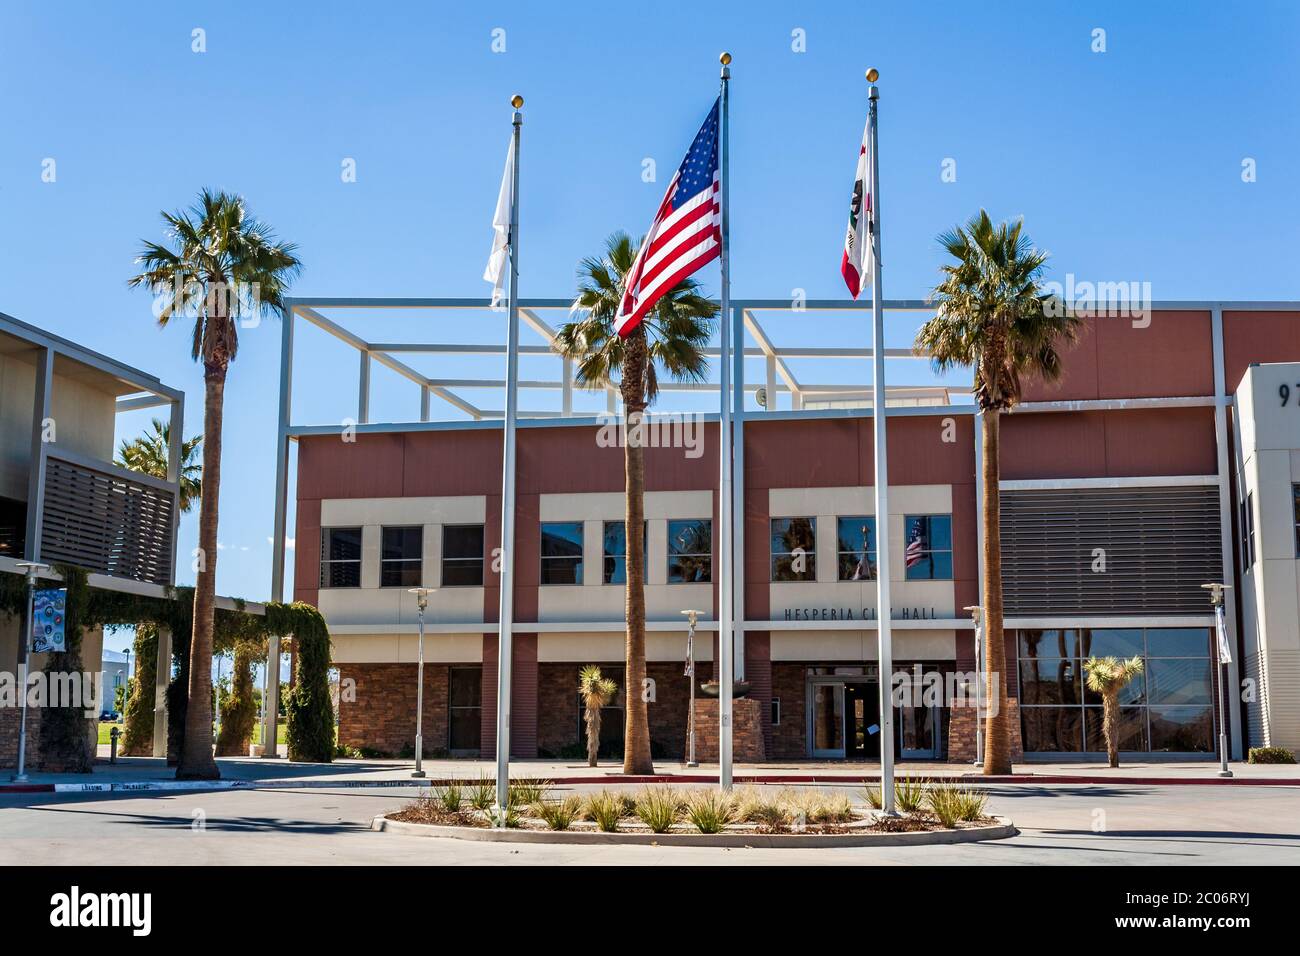 Hesperia, CA / USA - März 13 2019: Das Hesperia City Hall Bürogebäude befindet sich in der Seventh Ave 9700 in Hesperia, Kalifornien. Stockfoto